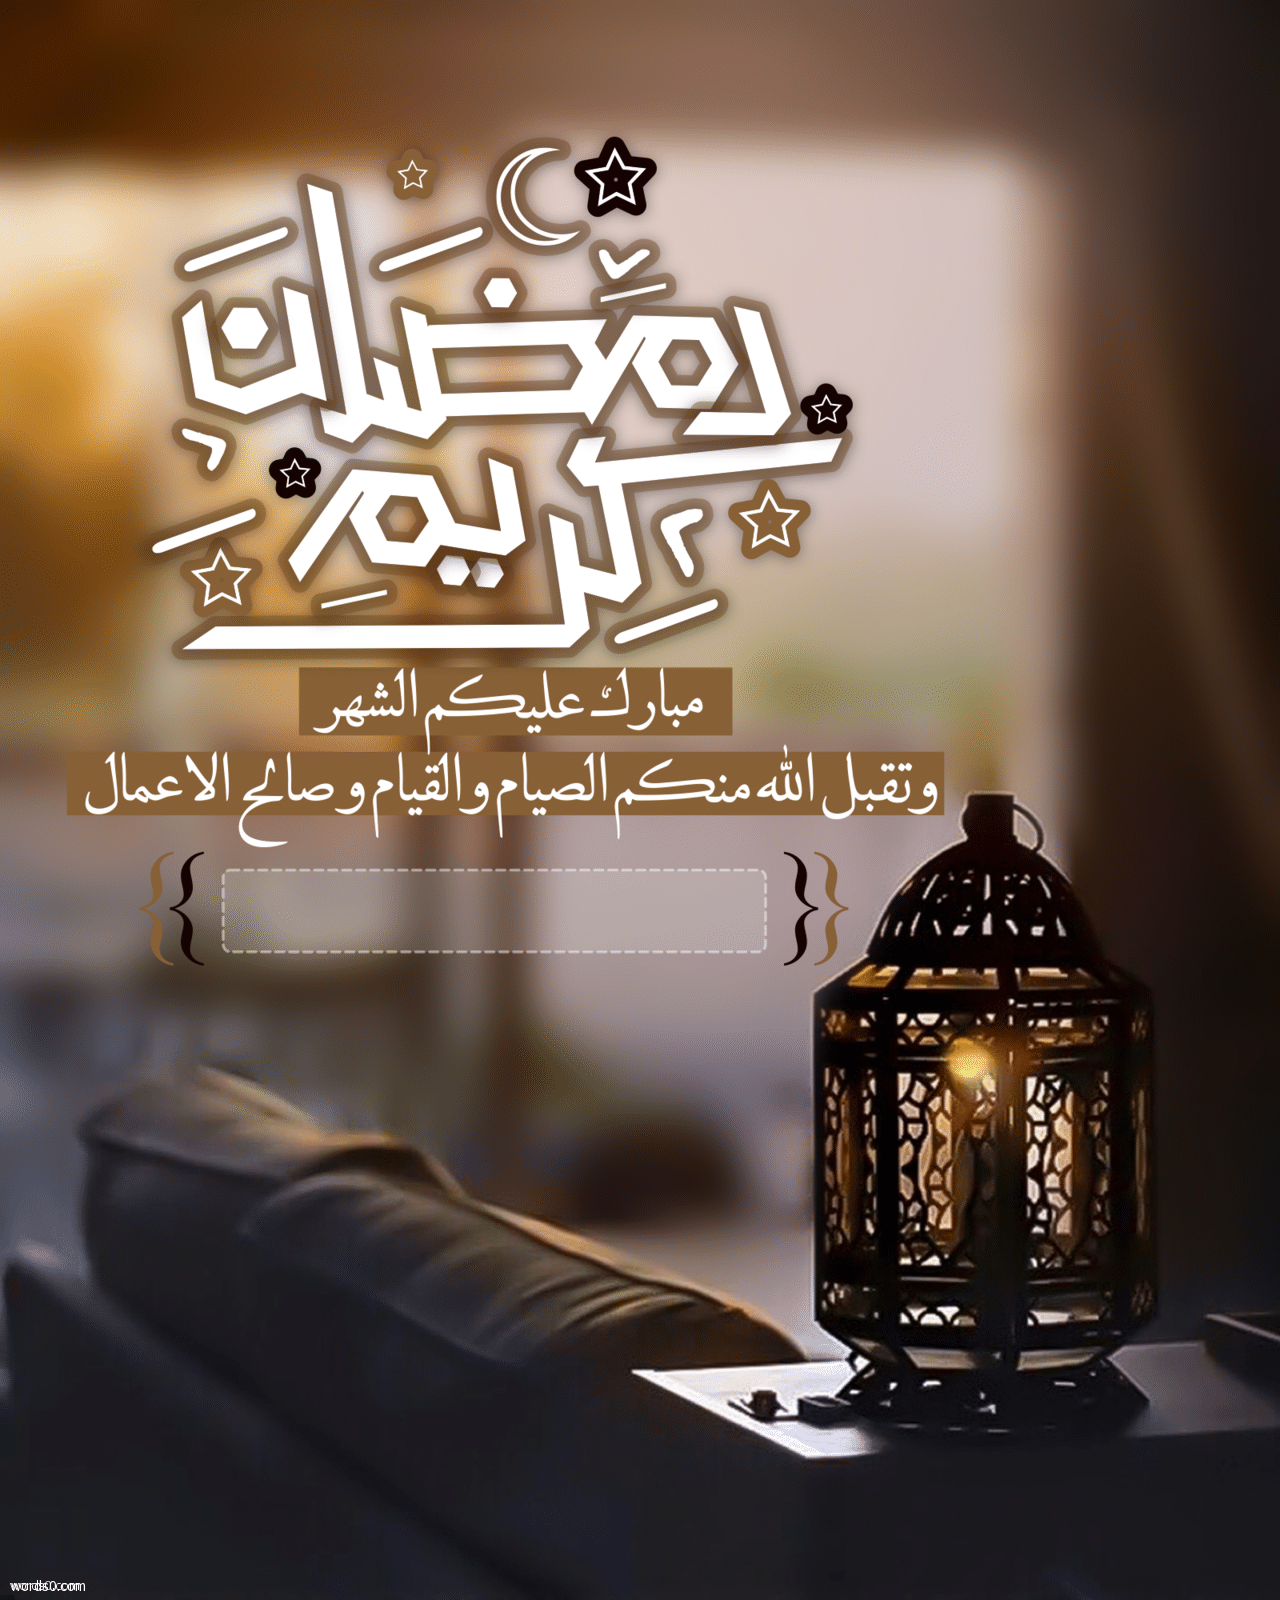 بطاقات تهنئة رمضان بأسمك بطاقة تهنئة مع الاسم موقع كلمات